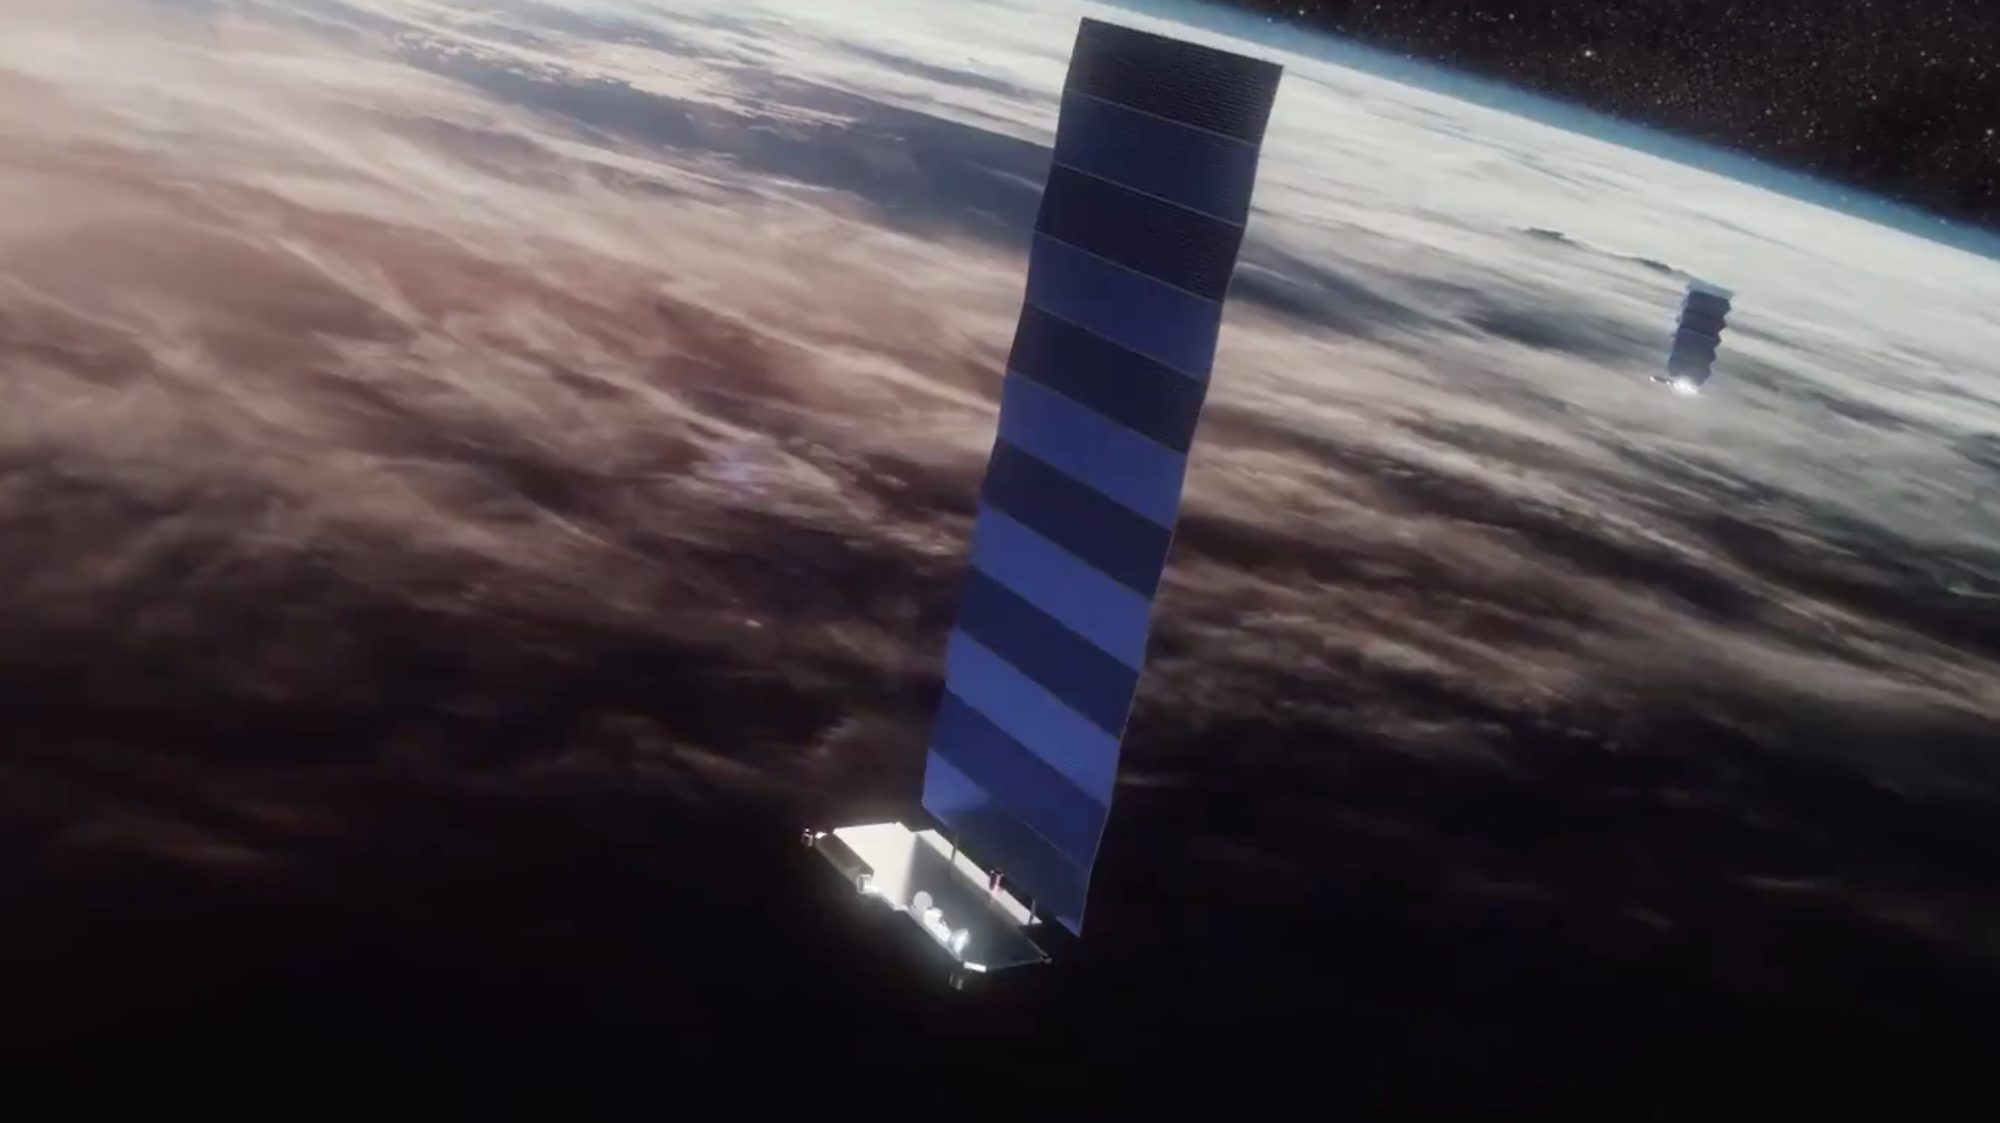  SpaceX a lansat sâmbătă 52 de sateliți Starlink în orbită